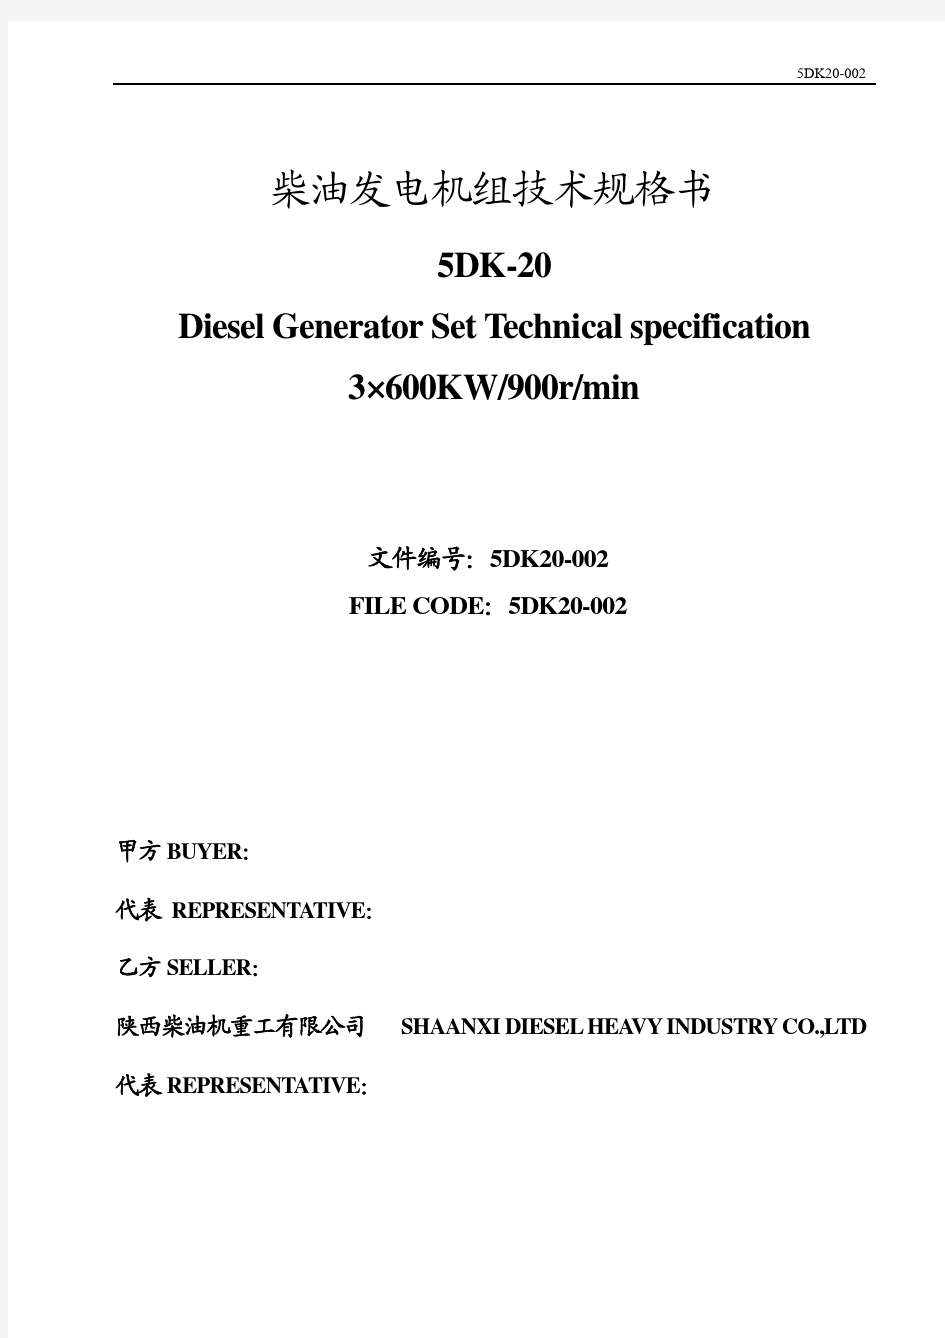 柴油发电机组技术规格书